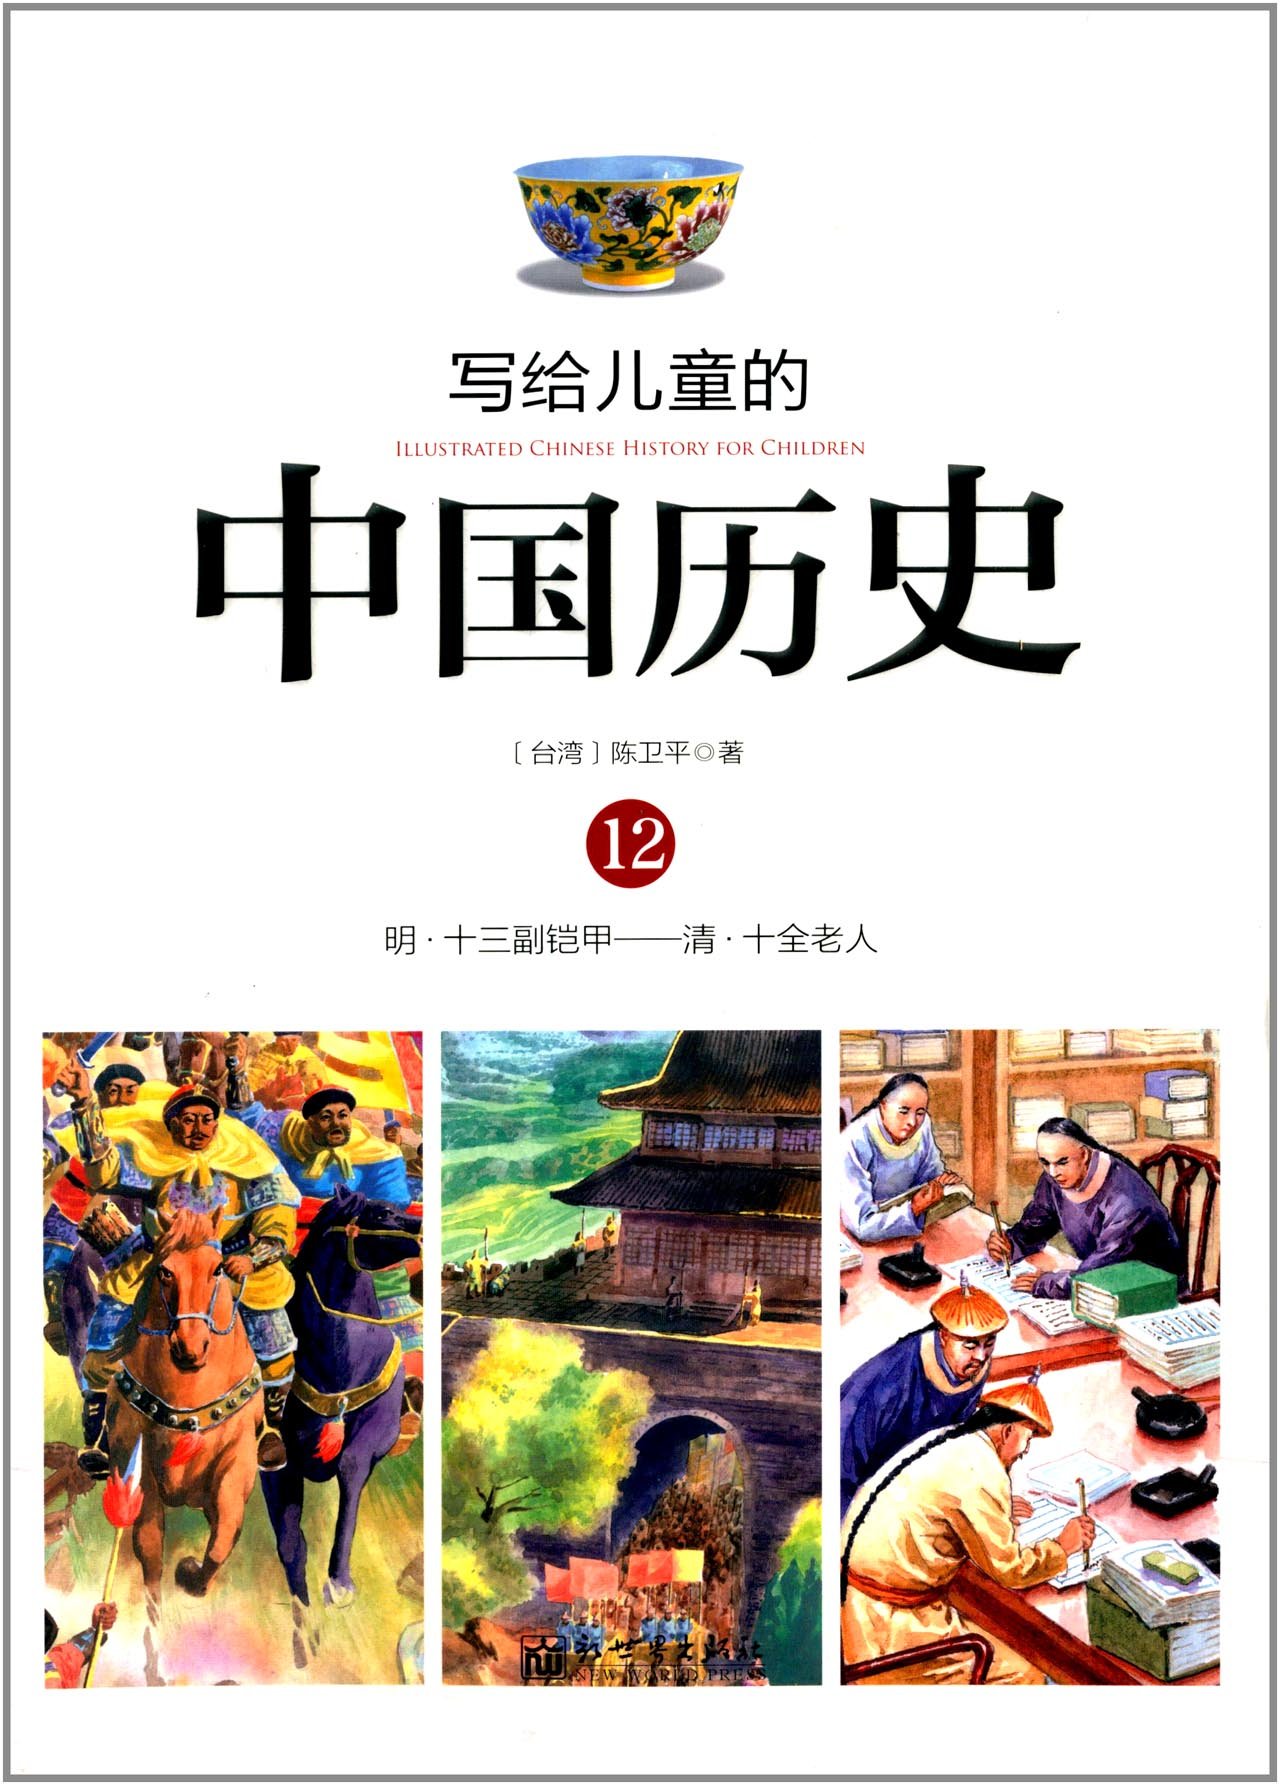 写给儿童的中国历史:12:明·十三副铠甲——清·十全老人